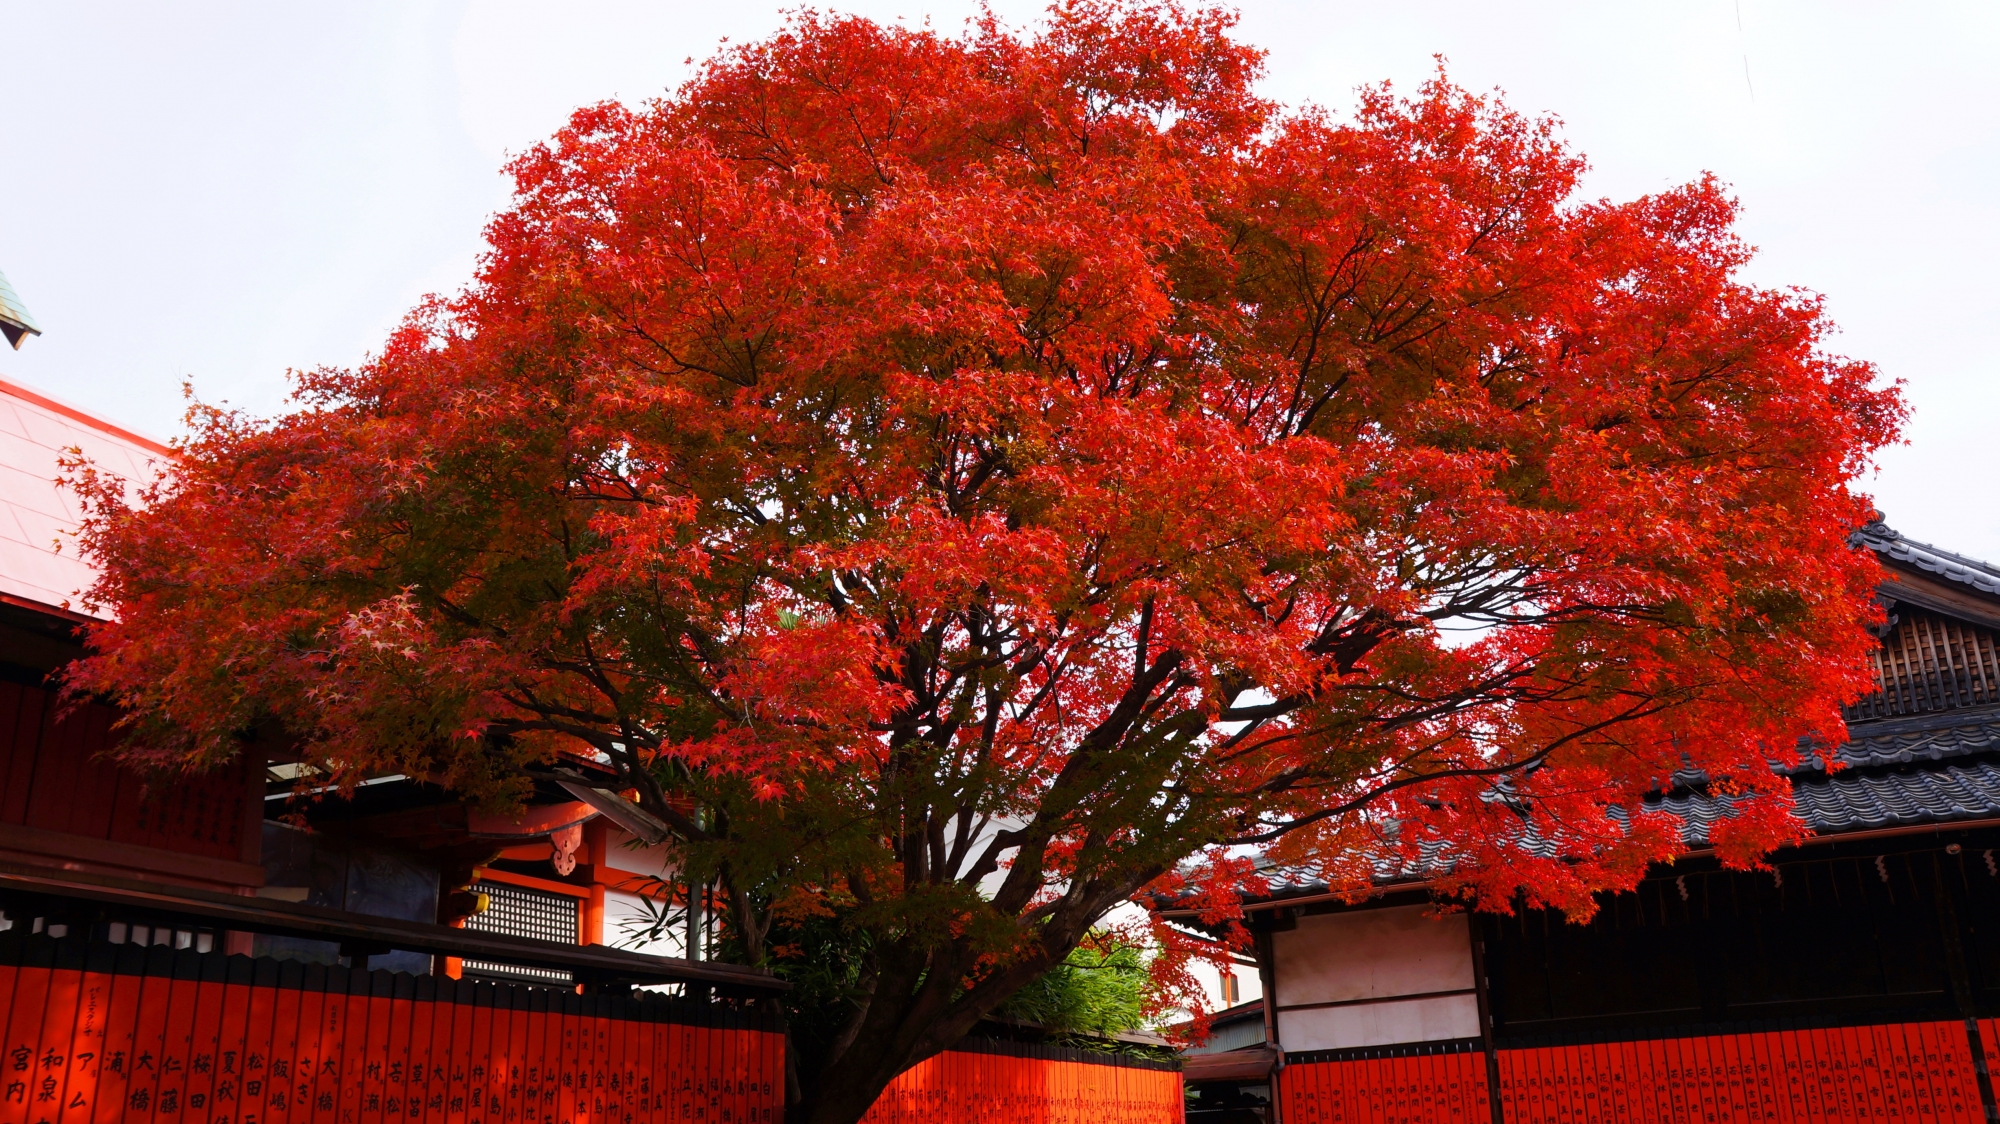 芸能神社の赤い玉垣と燃えるような真っ赤な紅葉